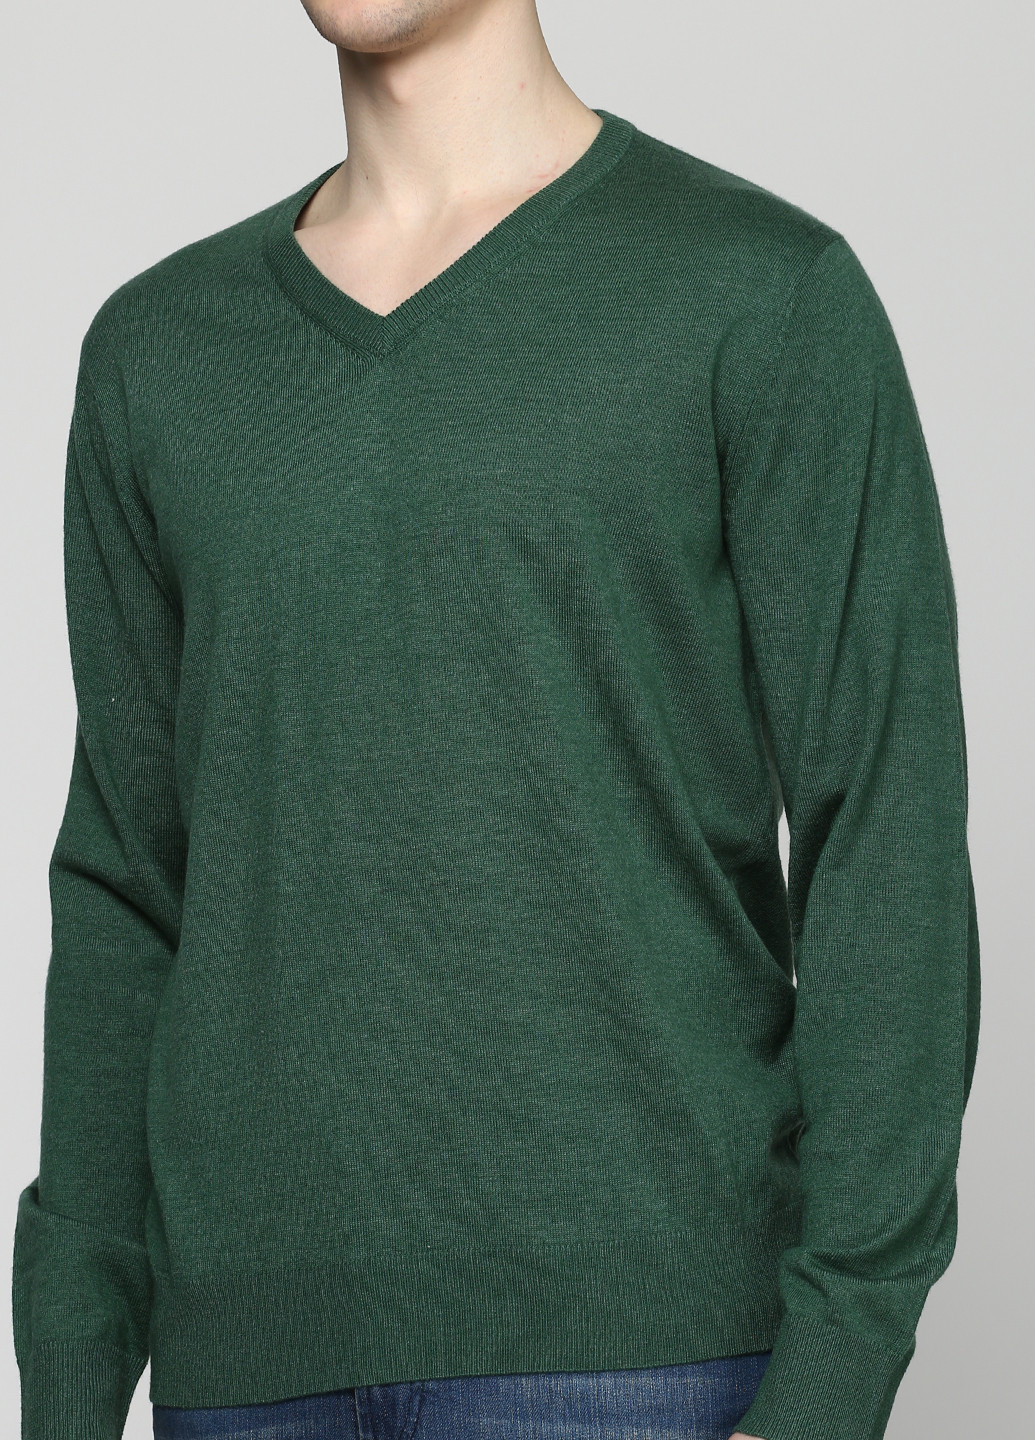 Зеленый демисезонный пуловер пуловер Pierre Balmain